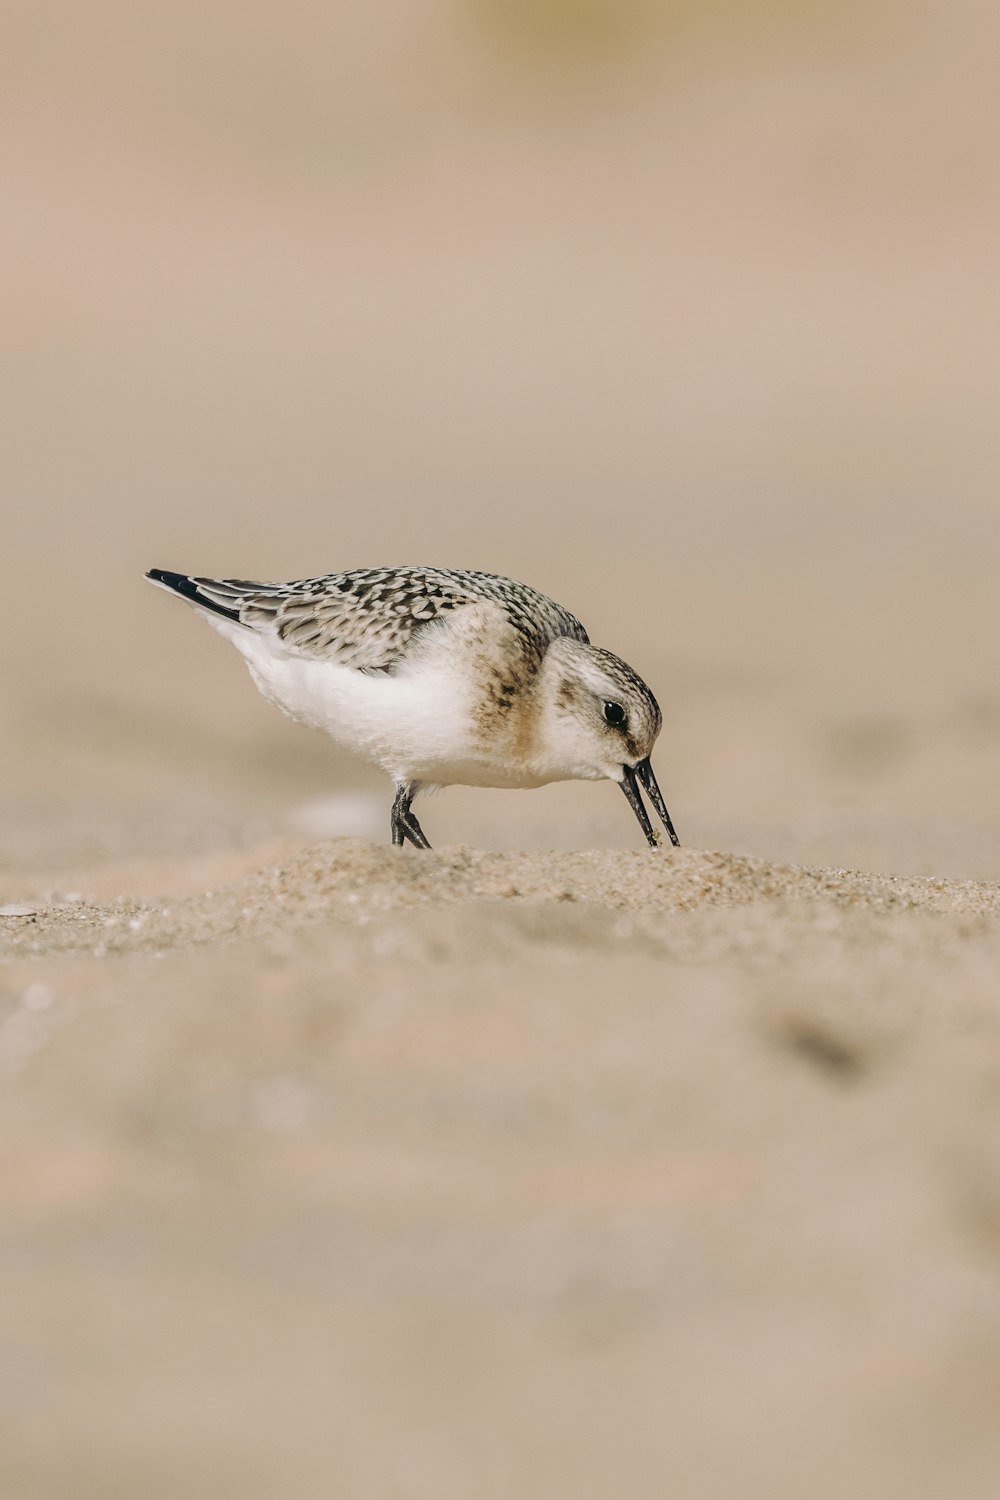 a small bird standing on top of a sandy beach